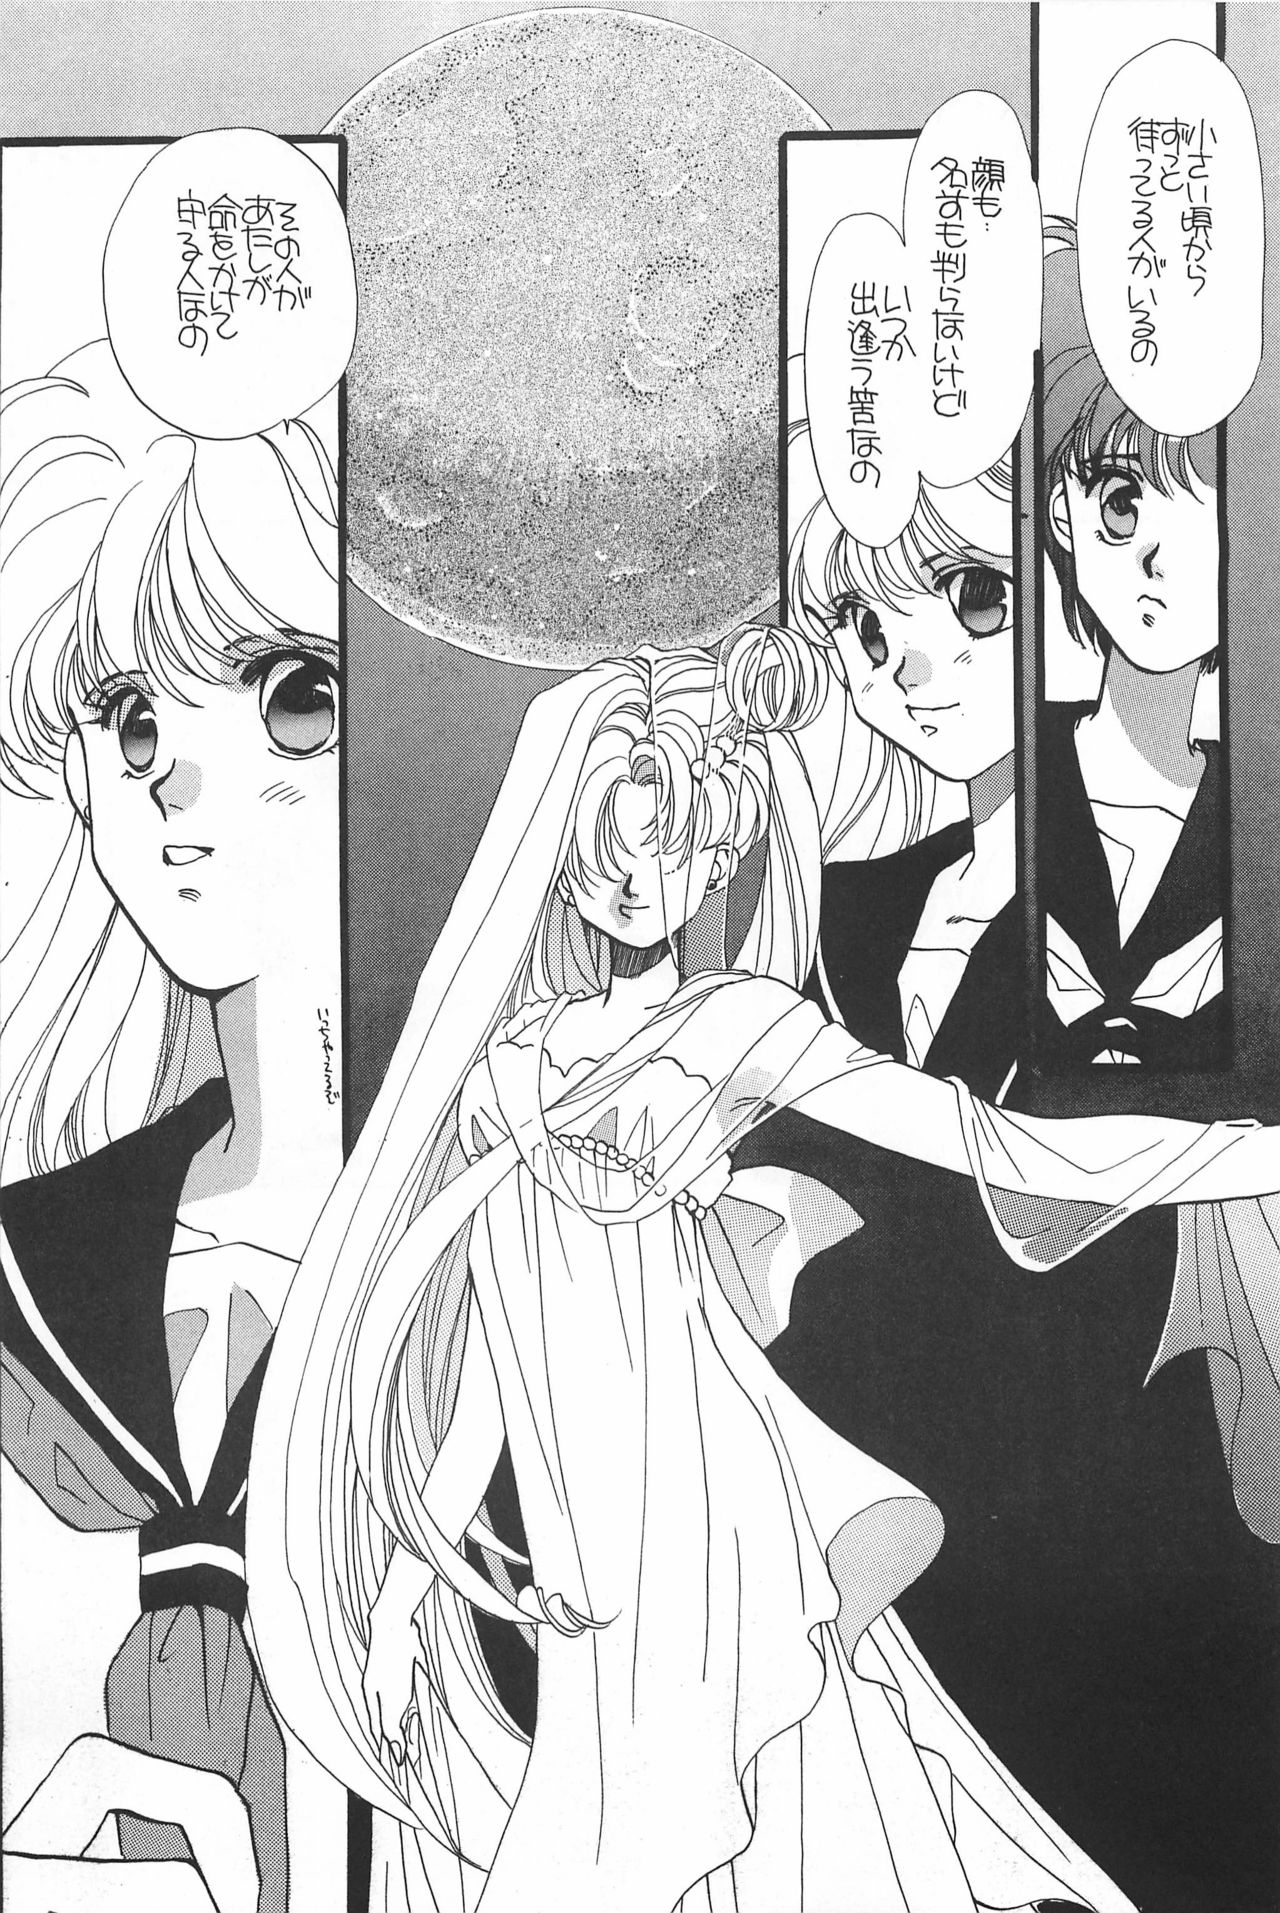 [Hello World (Muttri Moony)] Kaze no You ni Yume no You ni - Sailor Moon Collection (Sailor Moon) 74